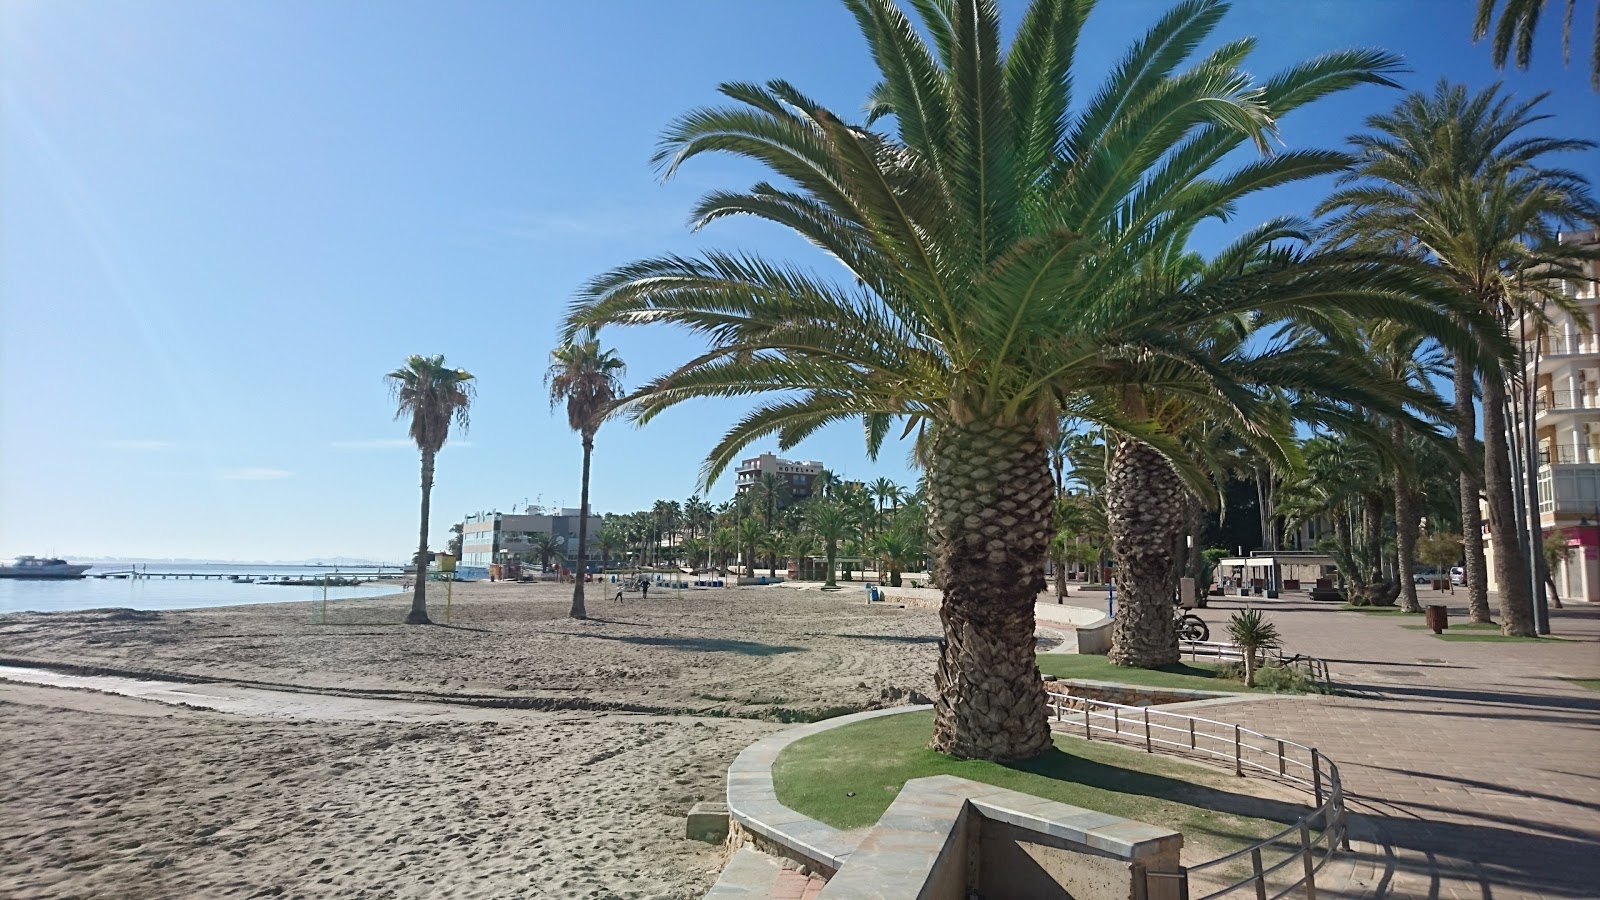 Playa de Santiago de La Ribera'in fotoğrafı - Çocuklu aile gezginleri için önerilir